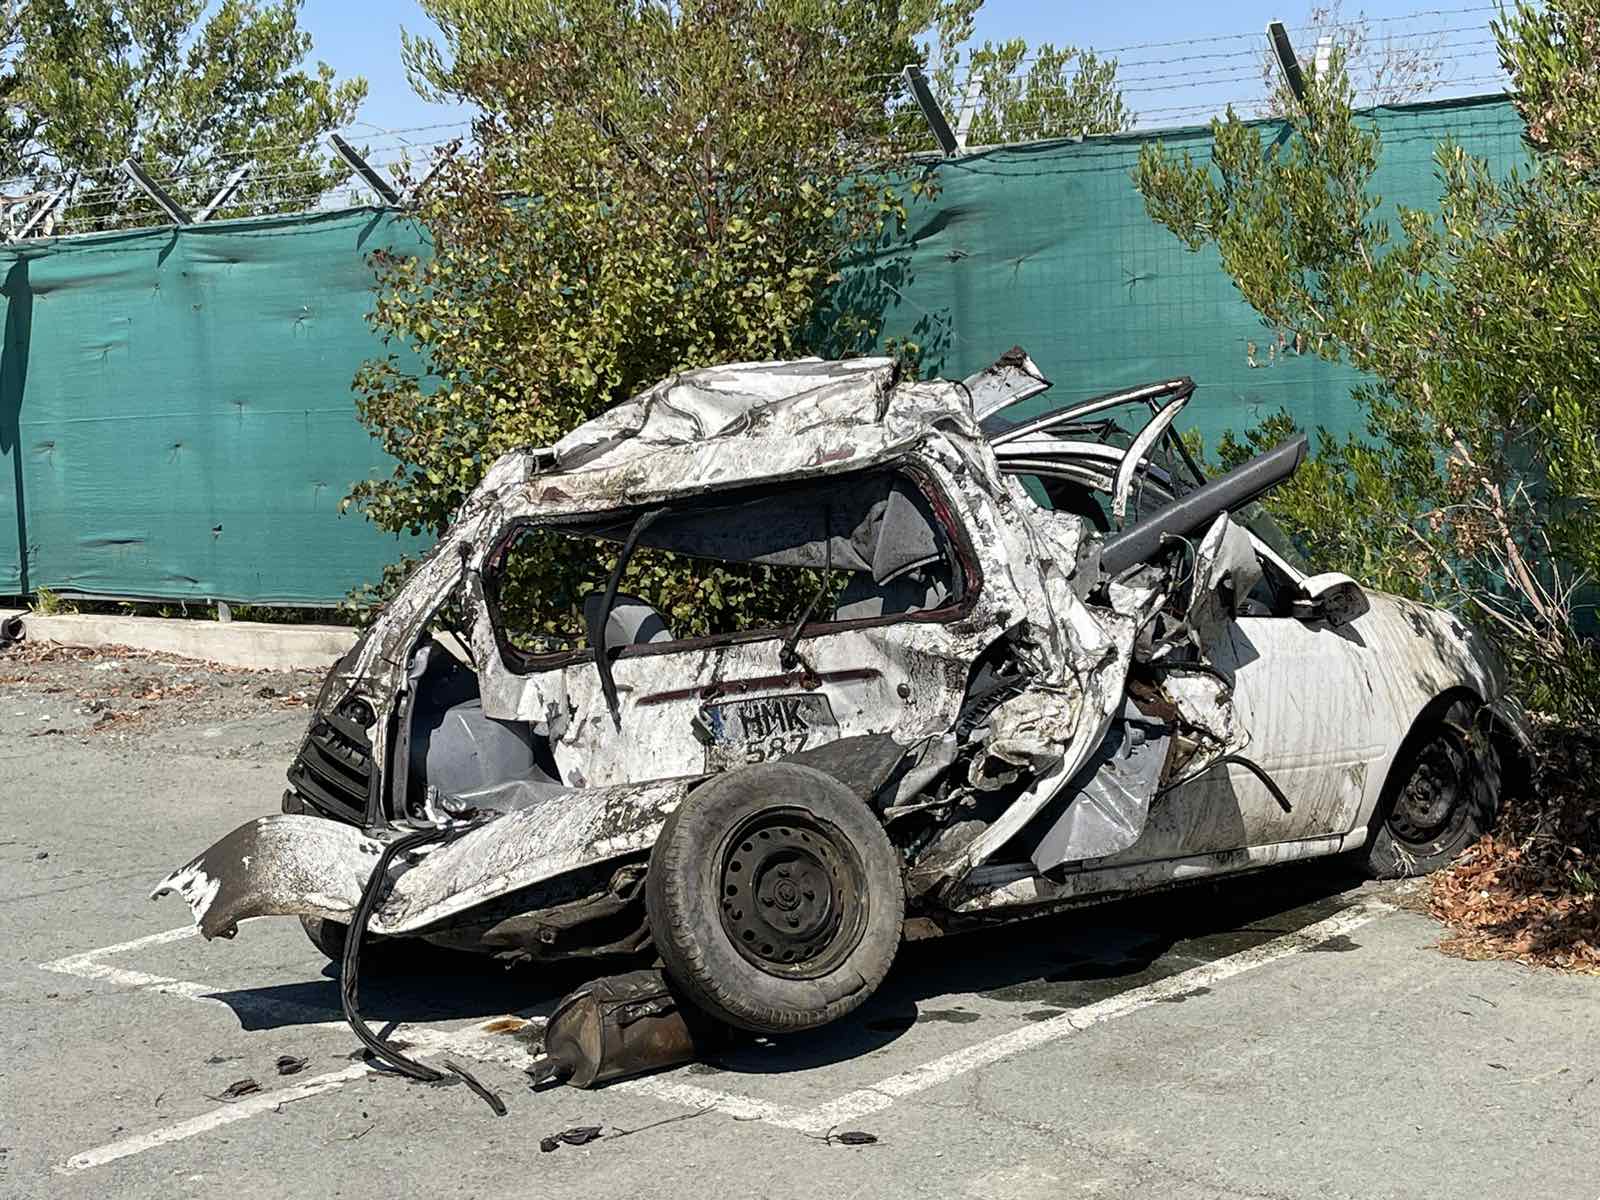 Νεκρός ο 61χρονος Παρασκευάς Προδρόμου σε νέα θανατηφόρα οδική σύγκρουση στον αυτοκινητόδρομο Κοφίνου – Λάρνακας